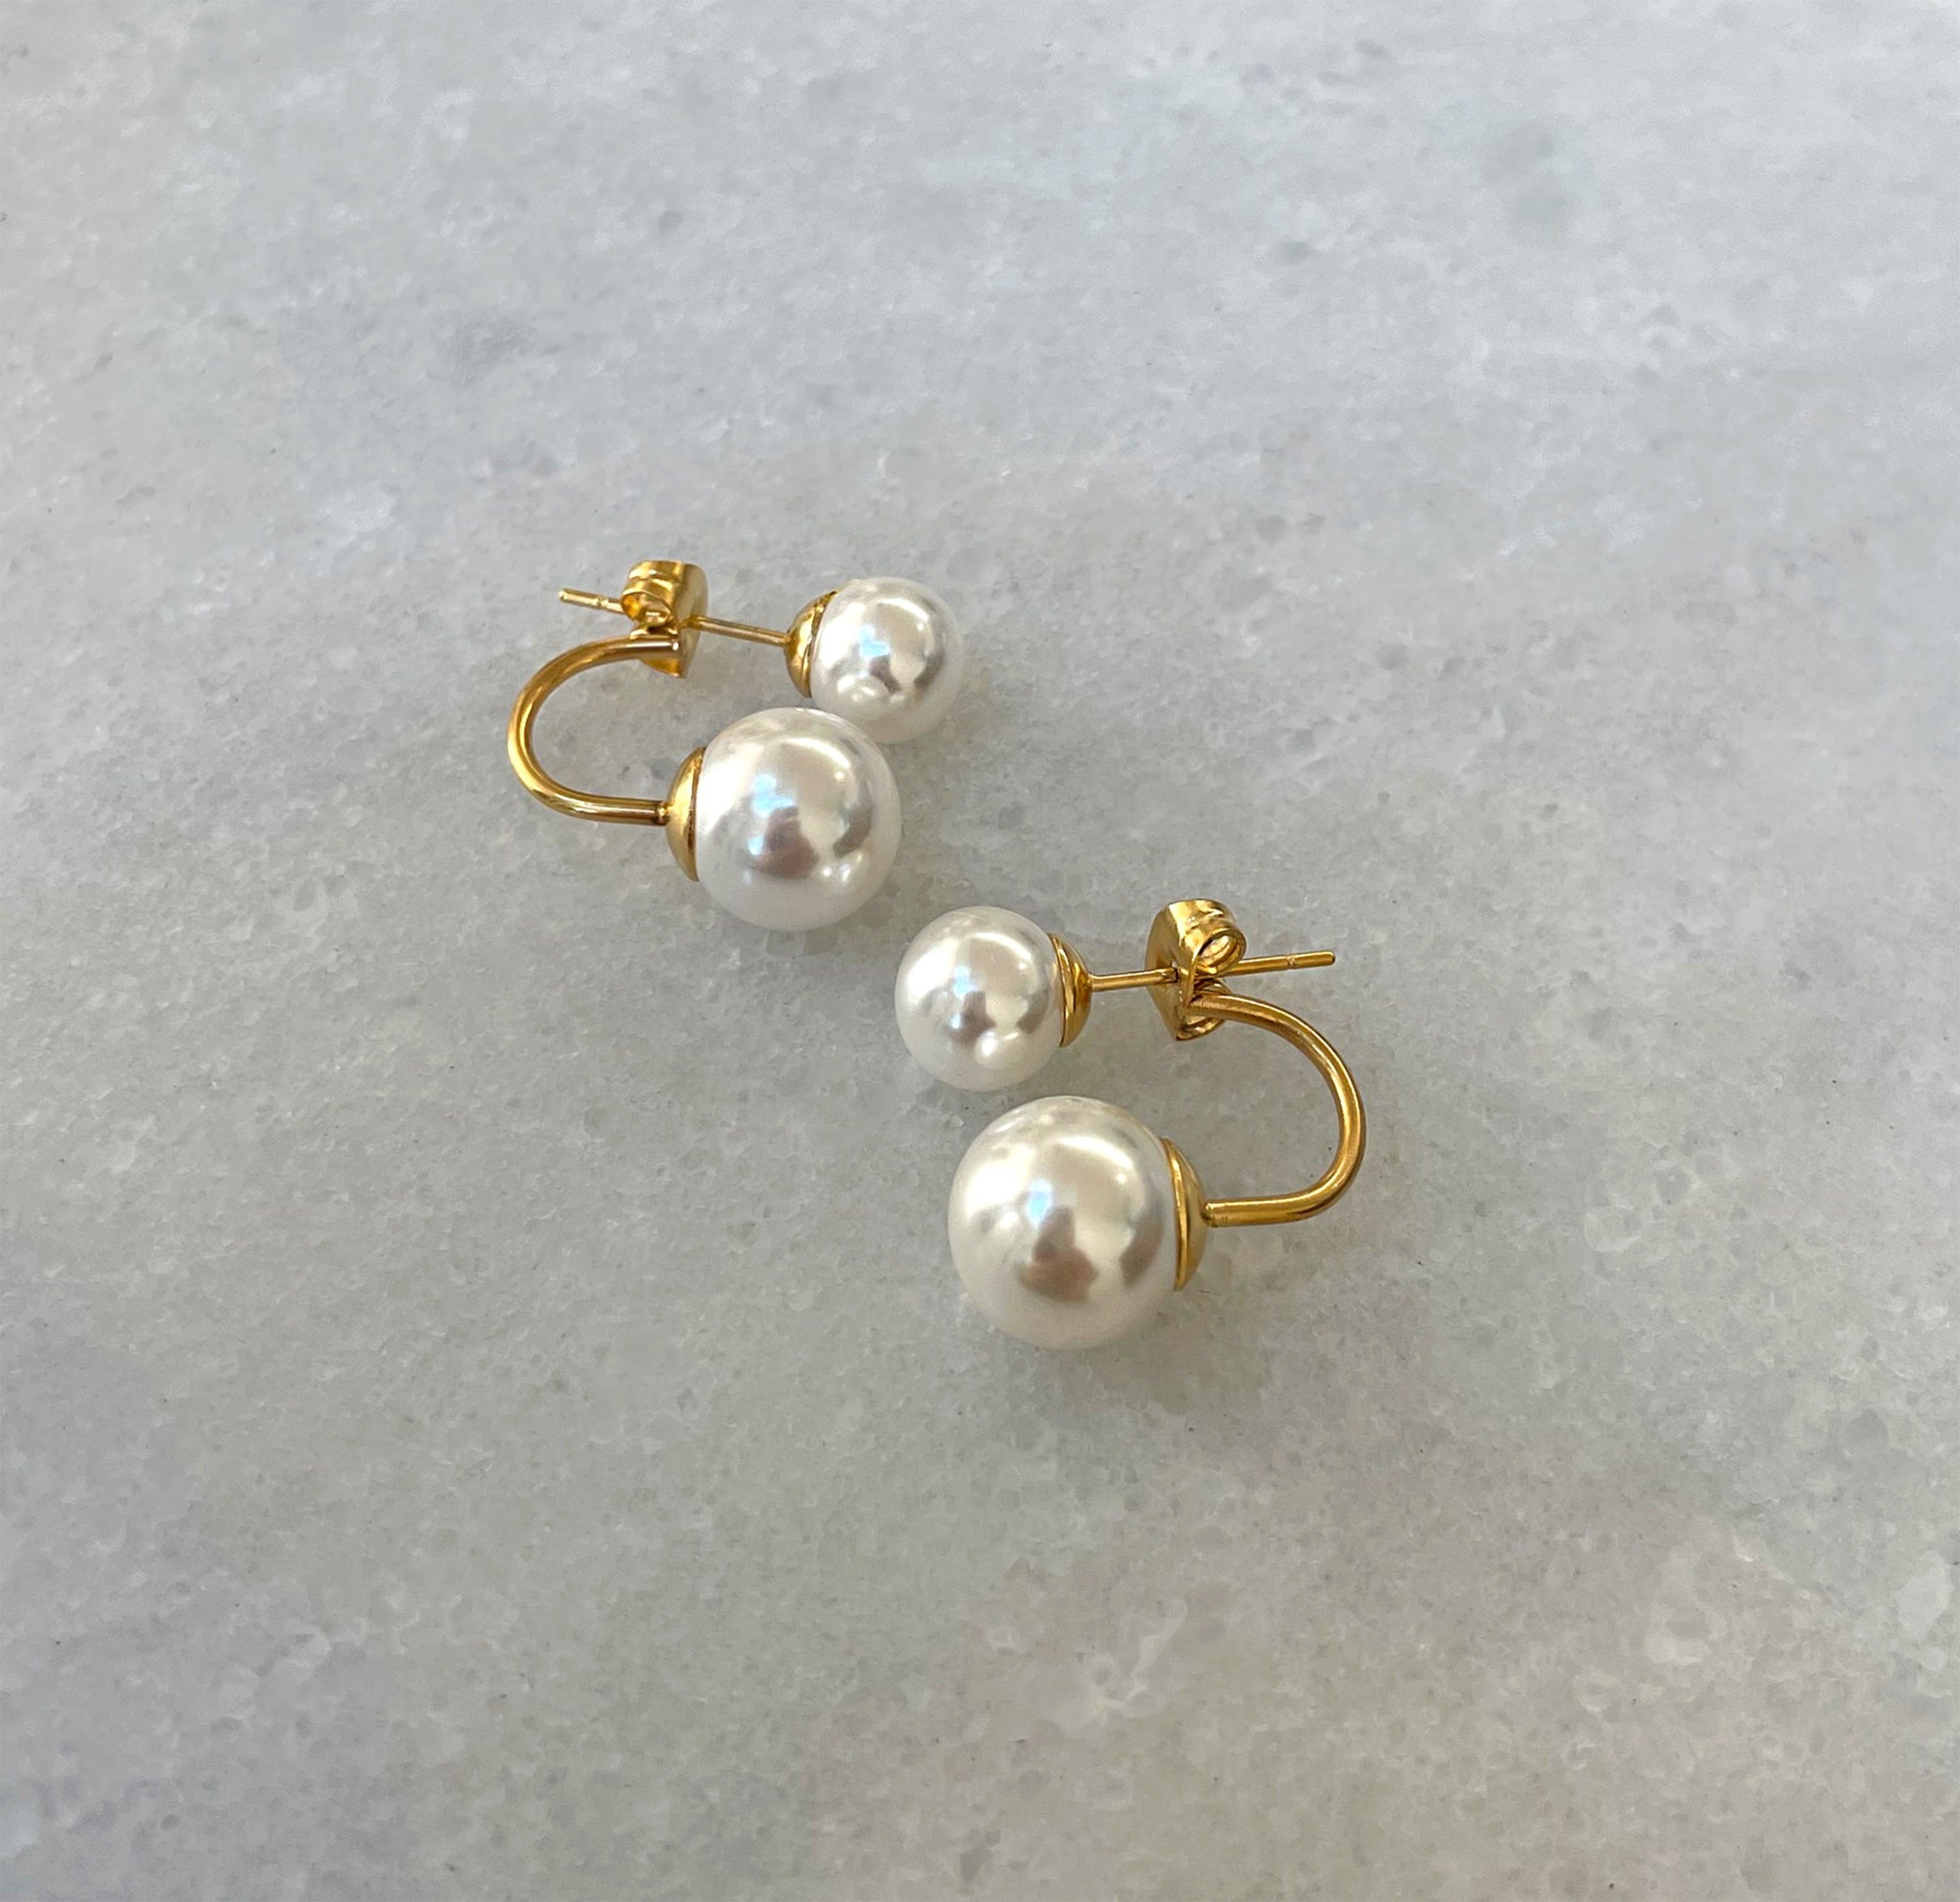 pearl jacket earrings waterproof jewelry